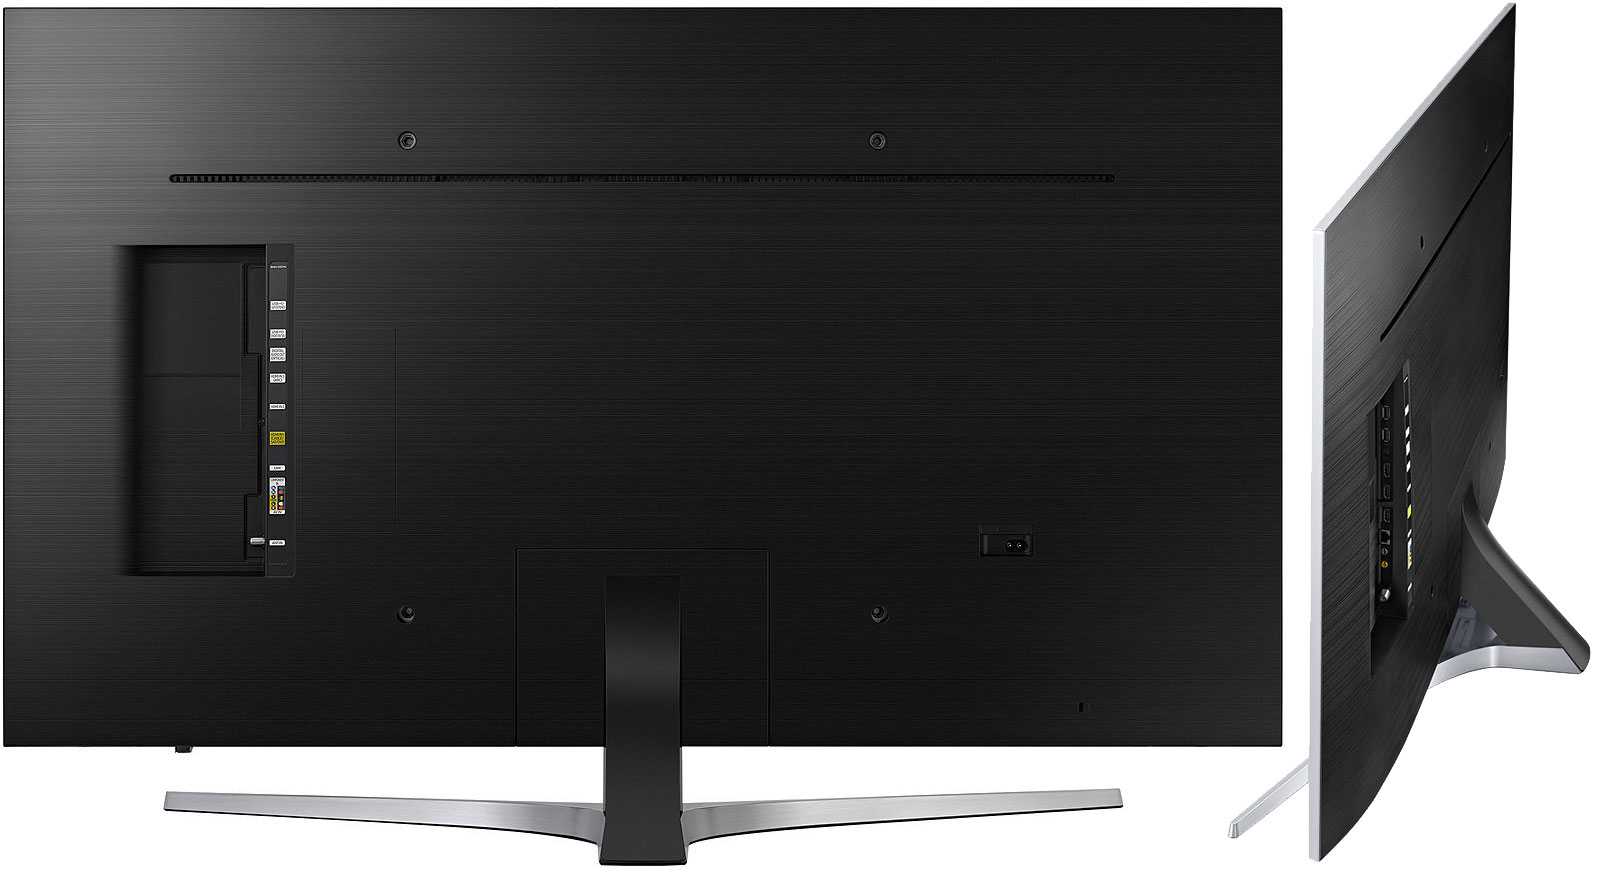 Телевизор Samsung UE49MU6400U - подробные характеристики обзоры видео фото Цены в интернет-магазинах где можно купить телевизор Samsung UE49MU6400U